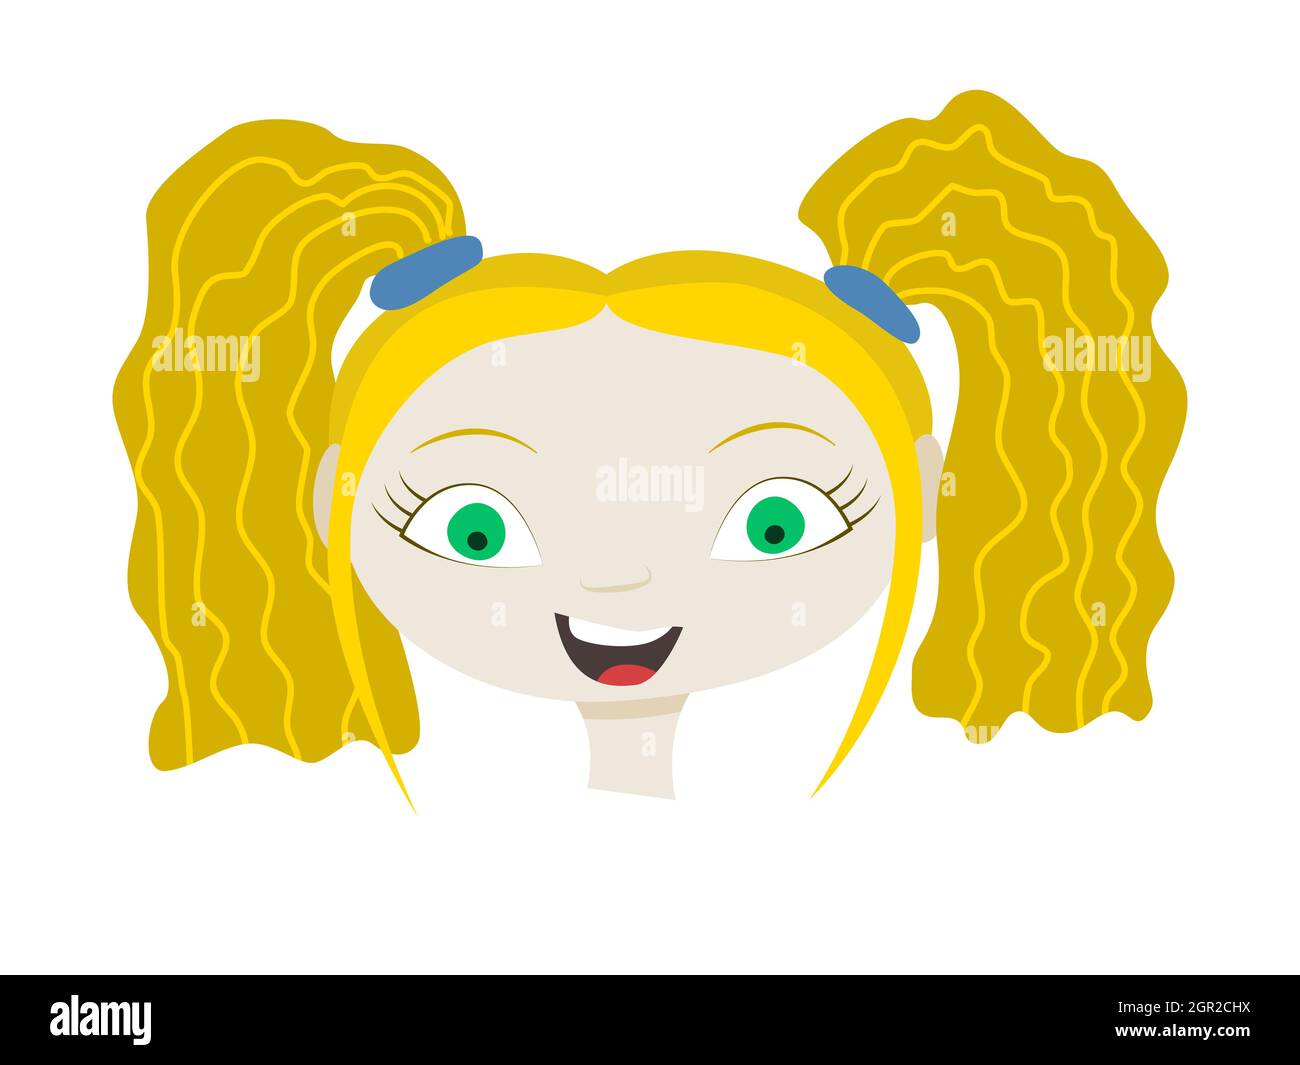 Handgezogener Kopf eines 9-jährigen Mädchens mit blondem Haar, grünen Augen und heller Haut. Vektor-Illustration eines kleinen Mädchens. Stock Vektor